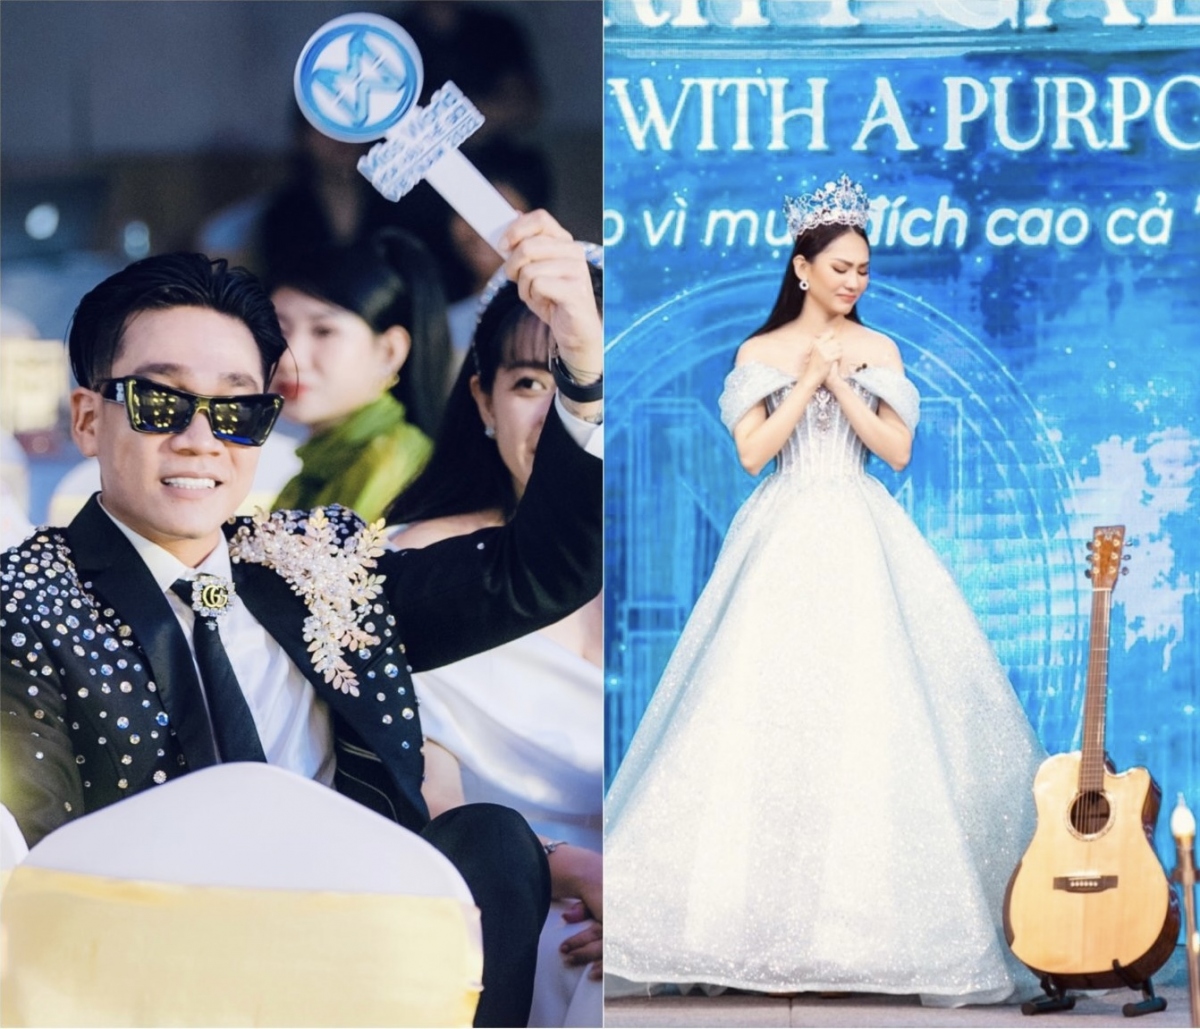 Wowy tiếc nuối khi vụt mất đàn guitar của Hoa hậu Mai Phương trong buổi đấu giá